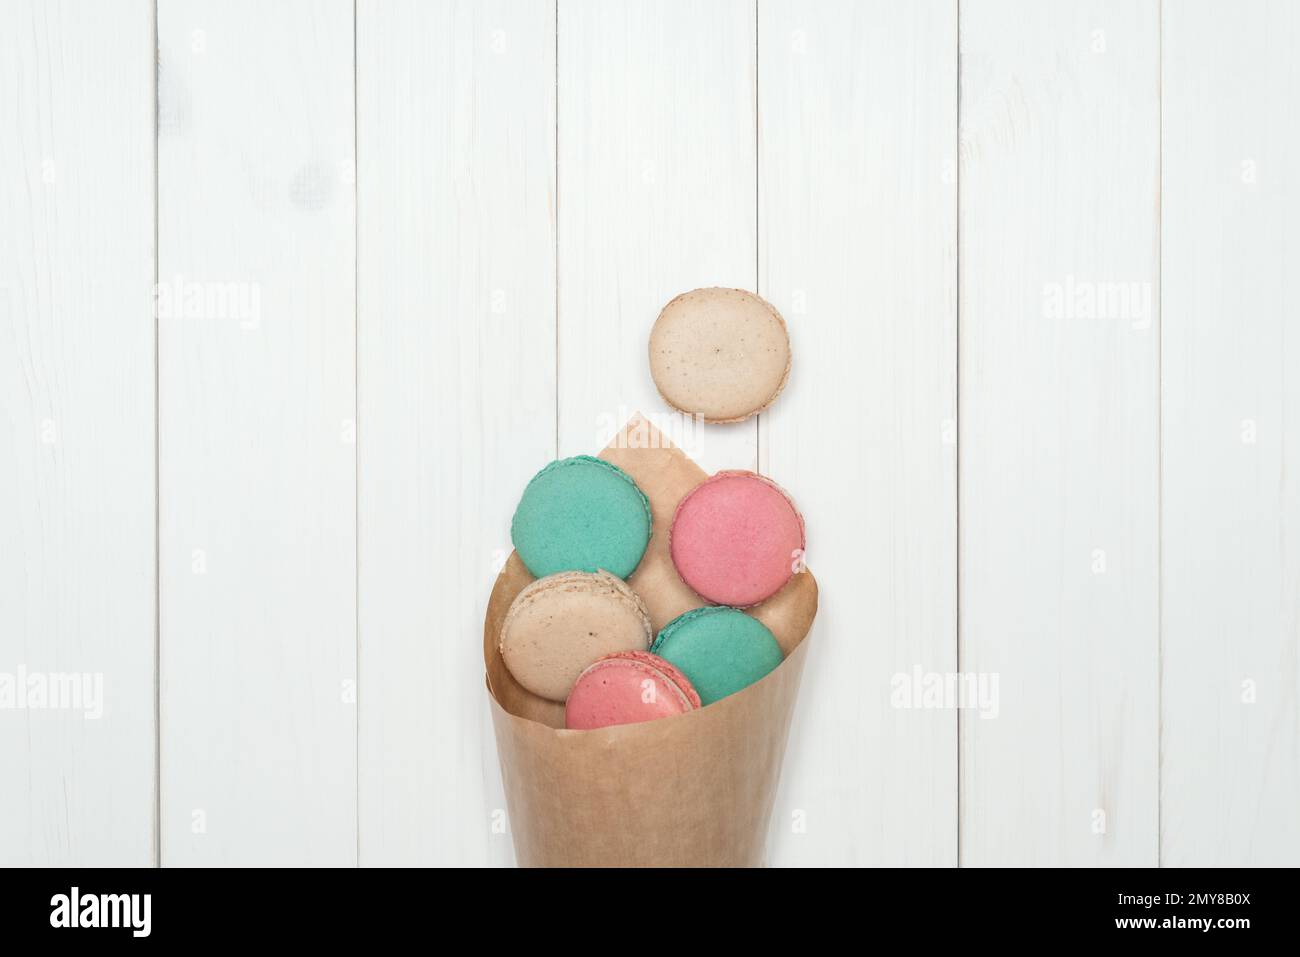 Sacs en papier avec biscuits macaron couleurs différentes. Délicieux dessert français sur fond de bois blanc. Modèle pour la conception. Mise en page à plat, vue de dessus Banque D'Images